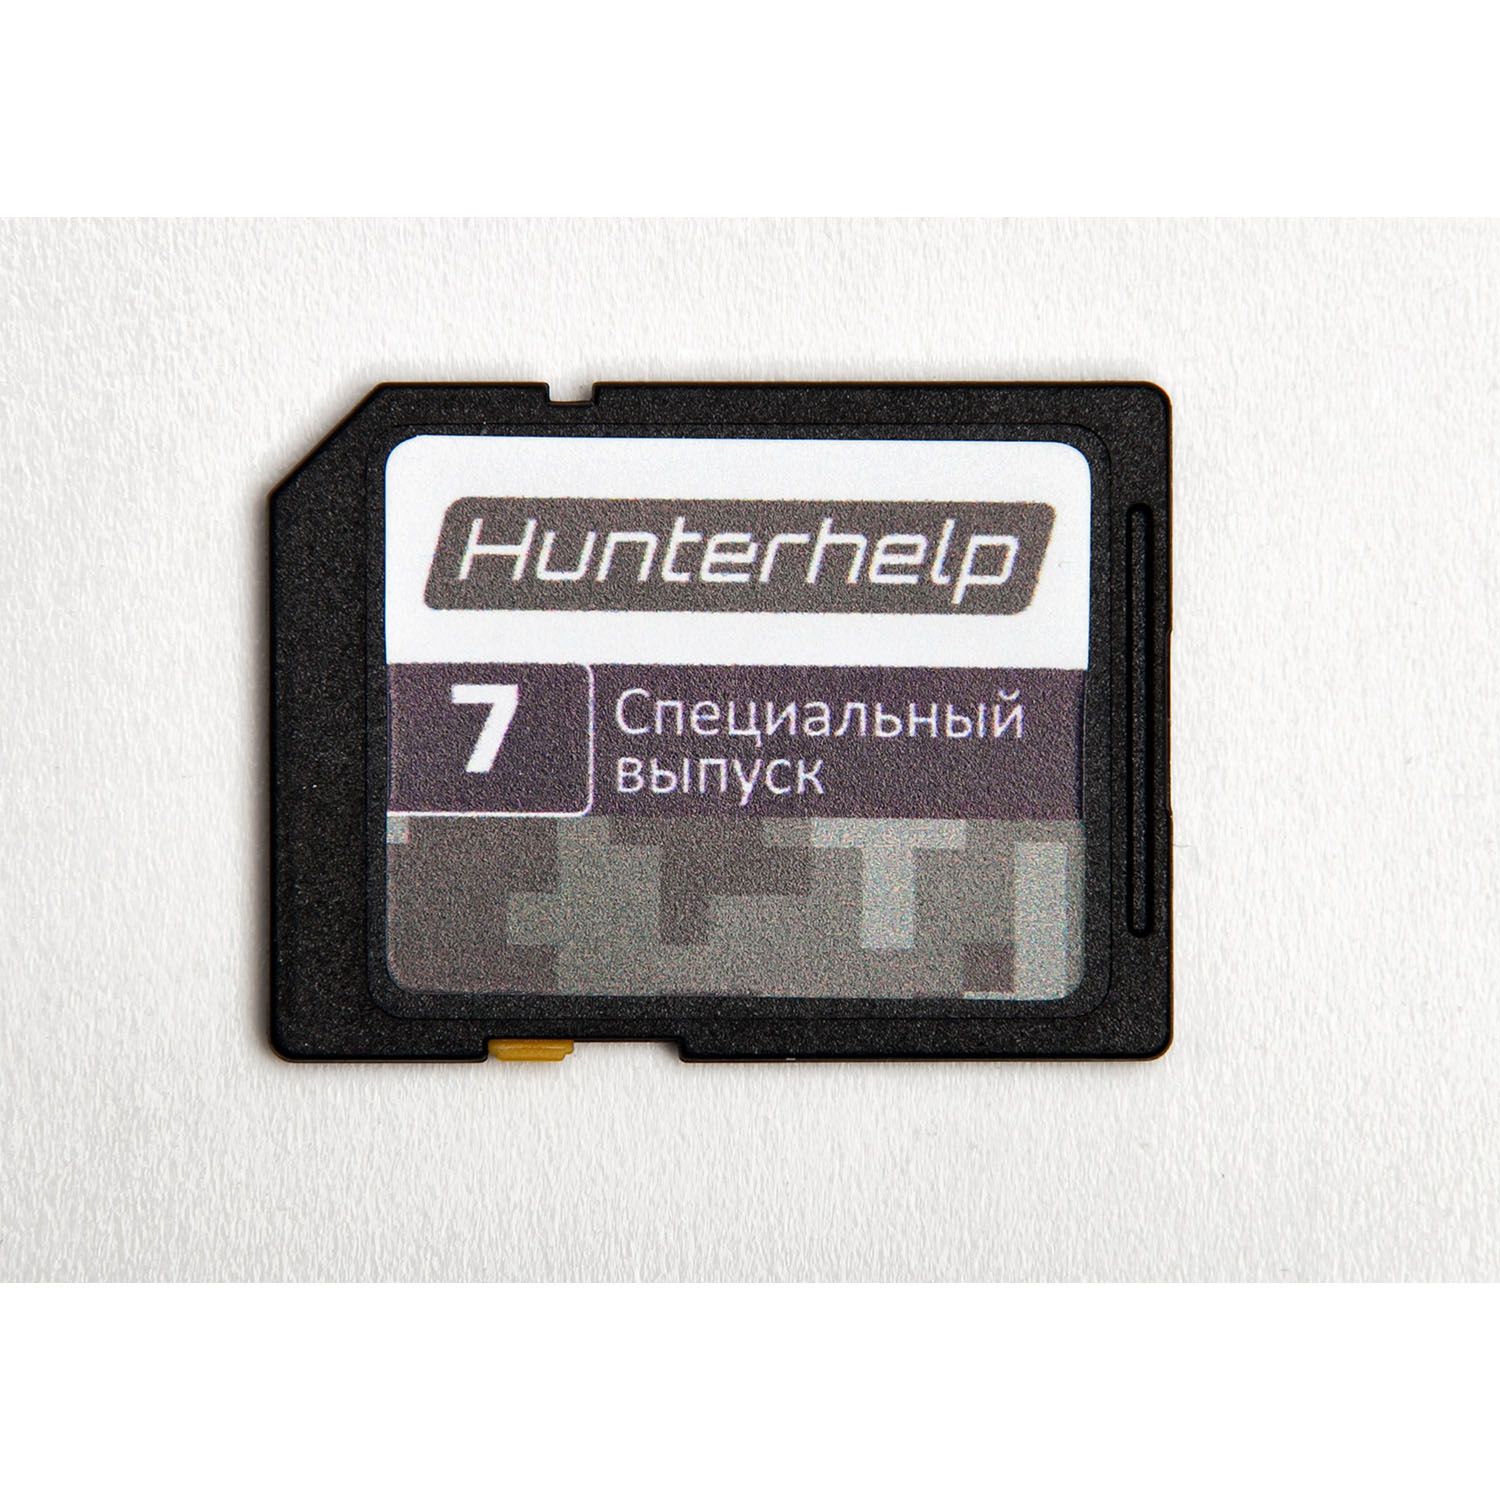 Электронный манок Hunterhelp PRO 3M, набор в кейсе (ALFA  2 шт, пульт ДУ, полная фонотека, АКБ)